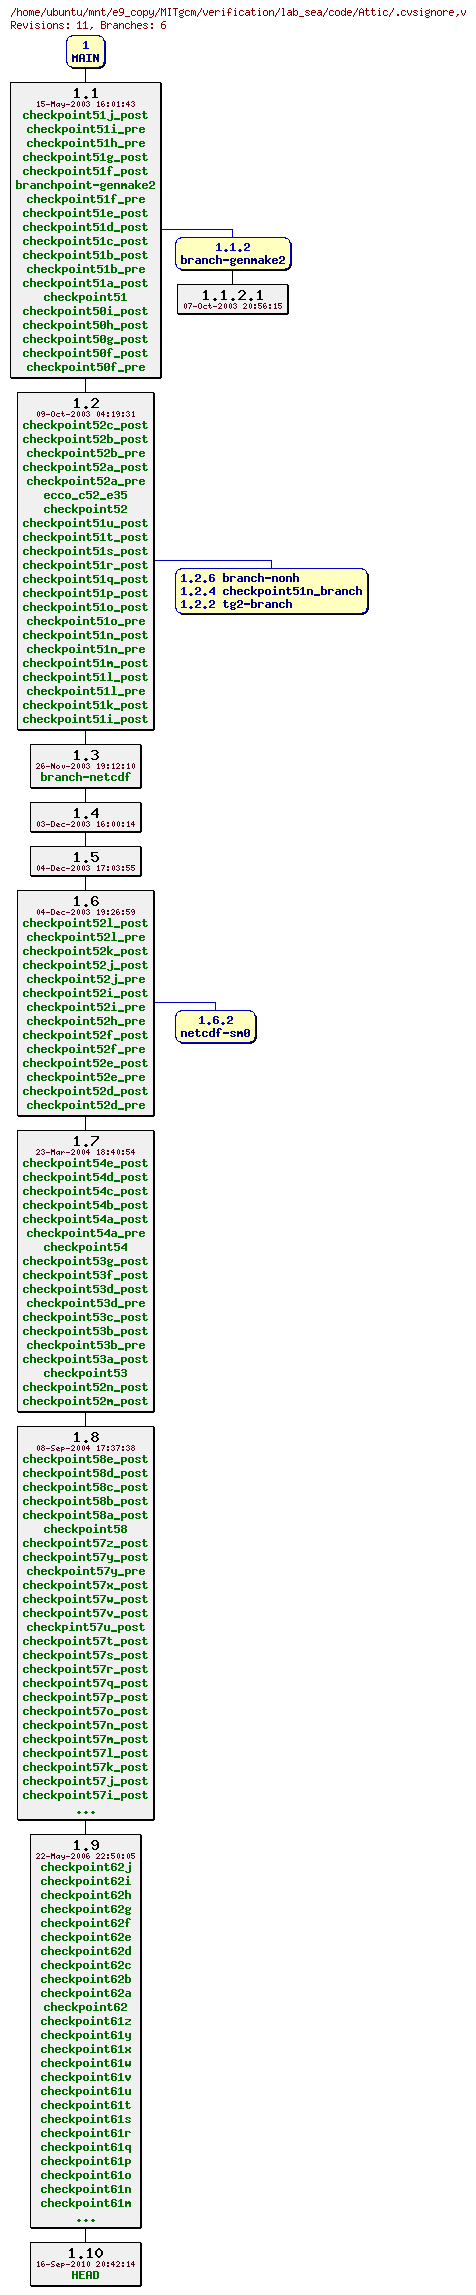 Revisions of MITgcm/verification/lab_sea/code/.cvsignore